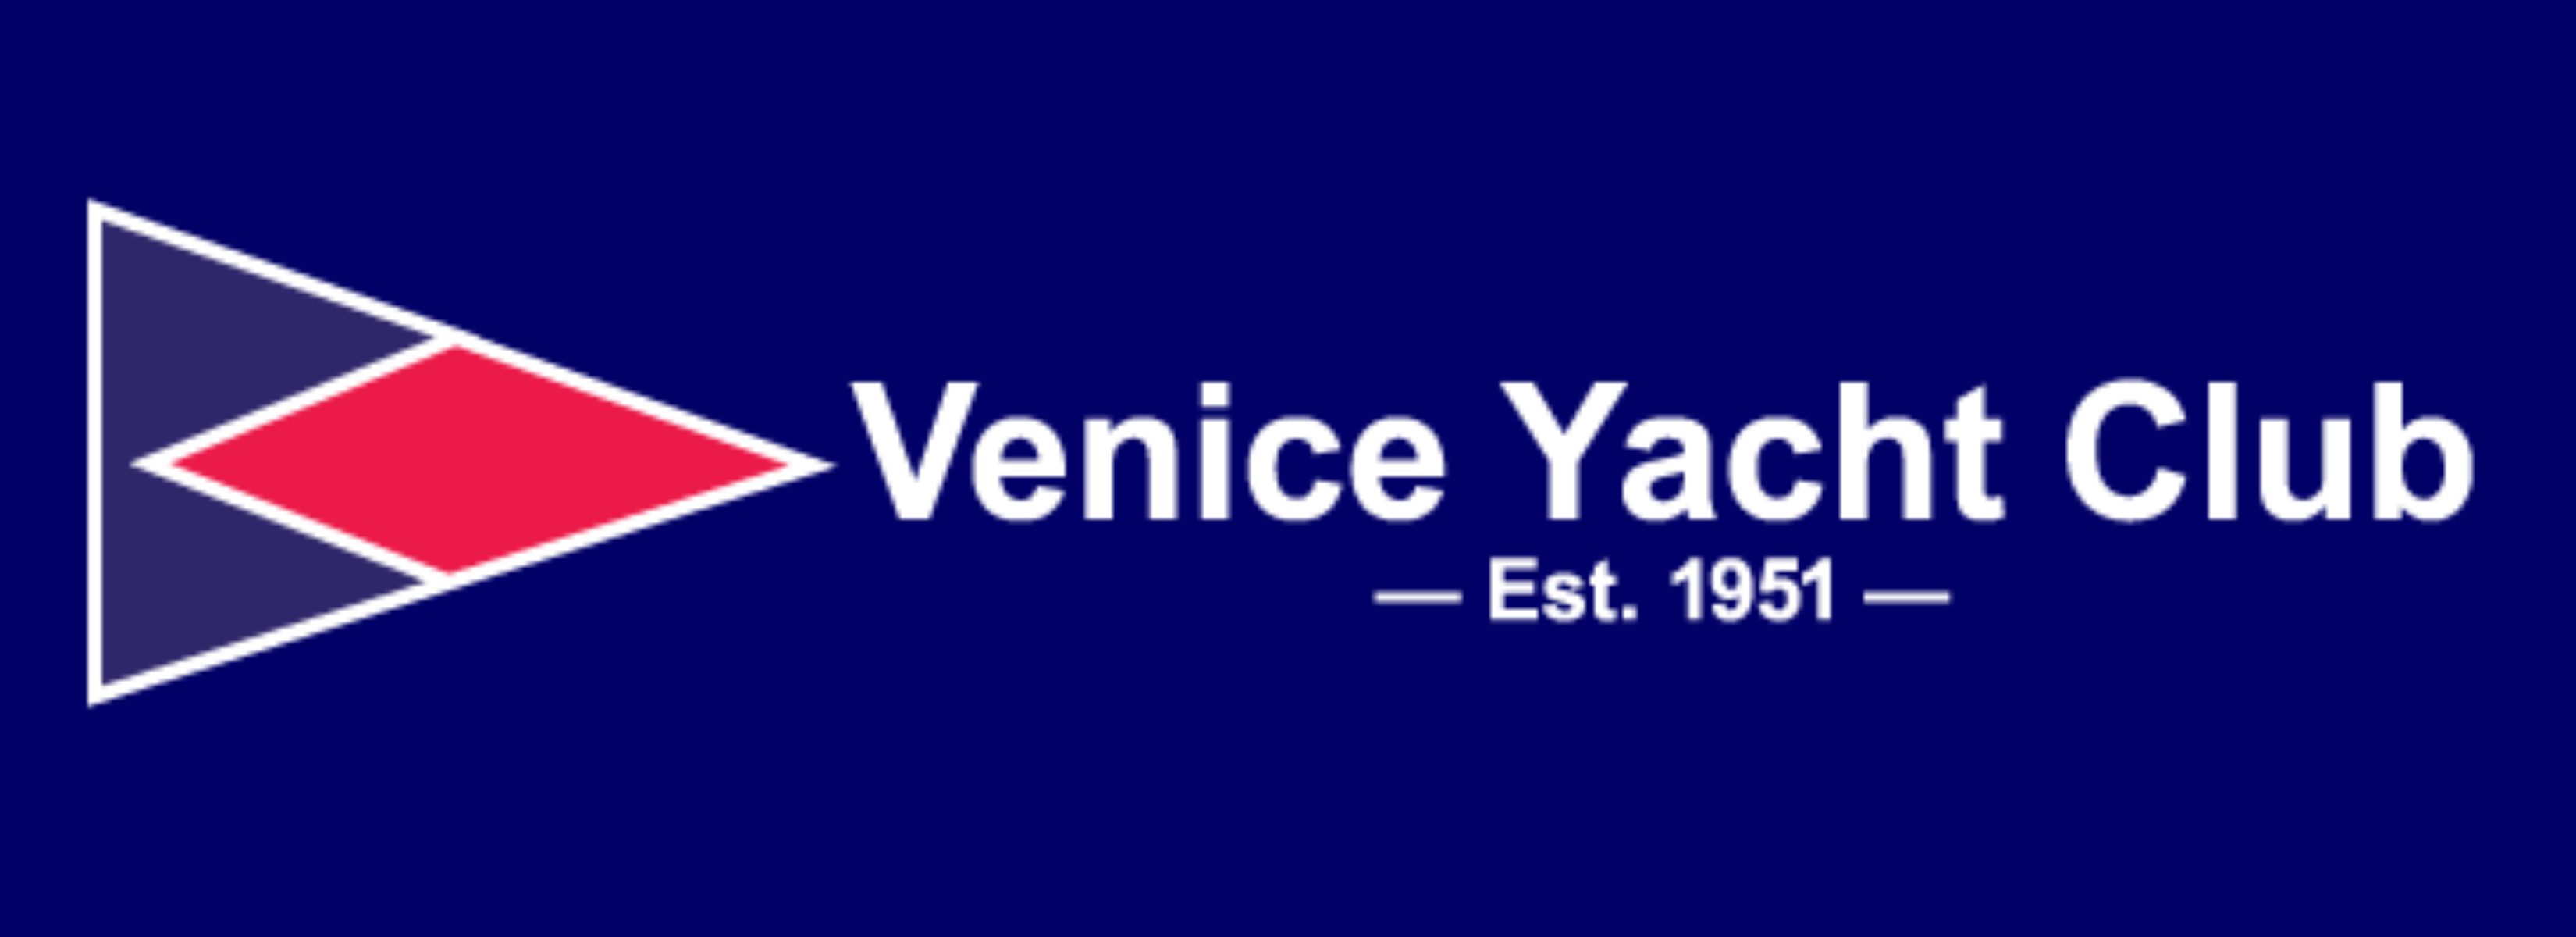 VYC logo